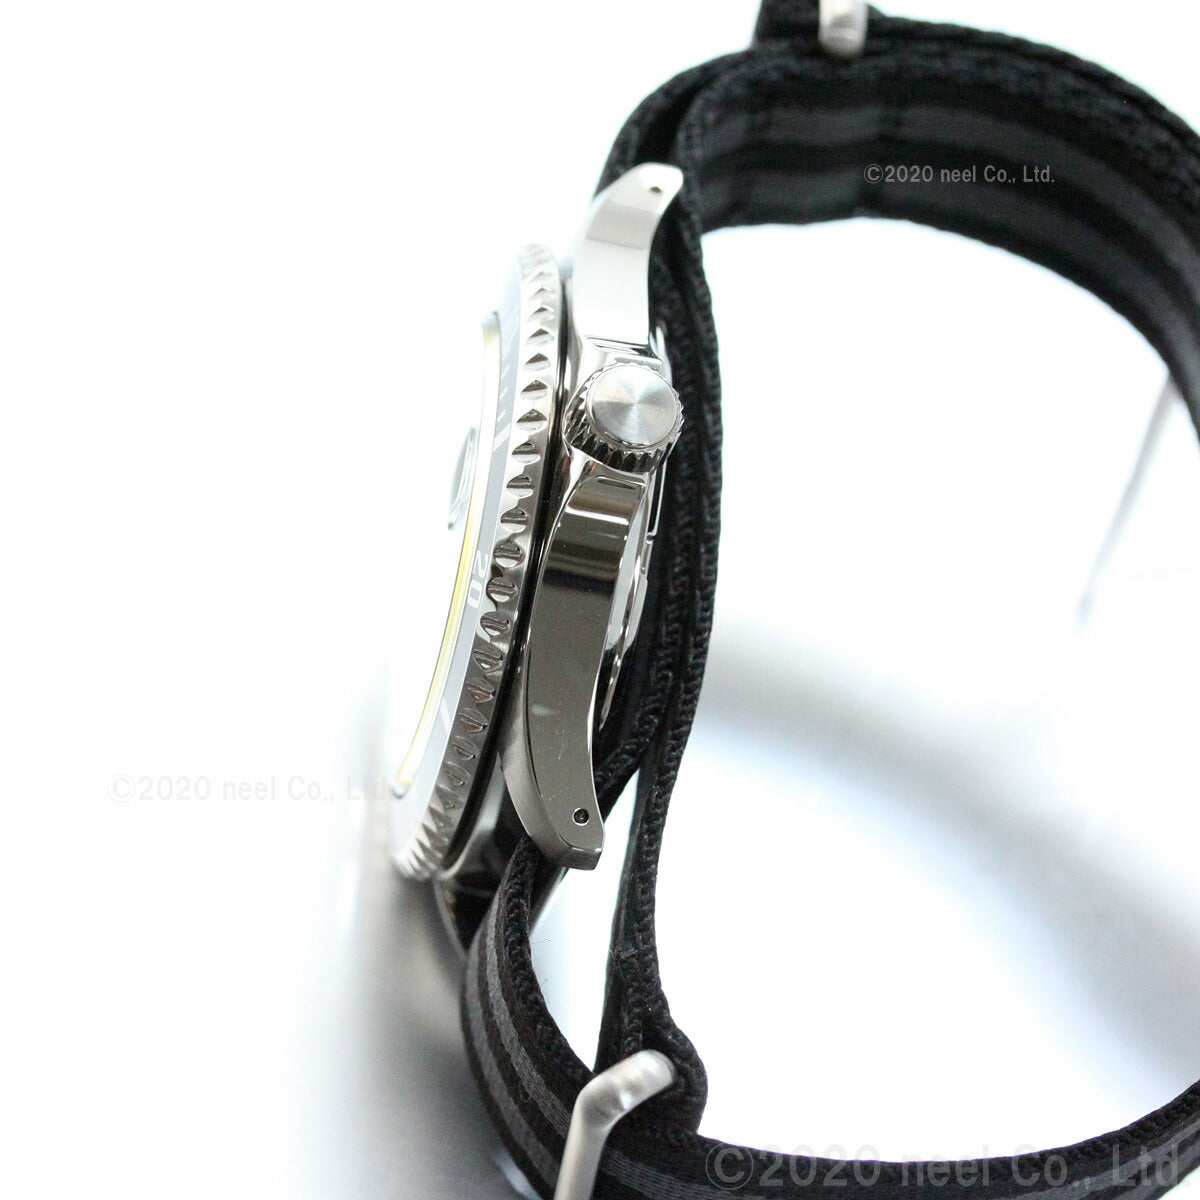 セイコー ソーラー SEIKO SOLAR ショップ限定モデル ヴィンテージデザイン 腕時計 メンズ SZEV014